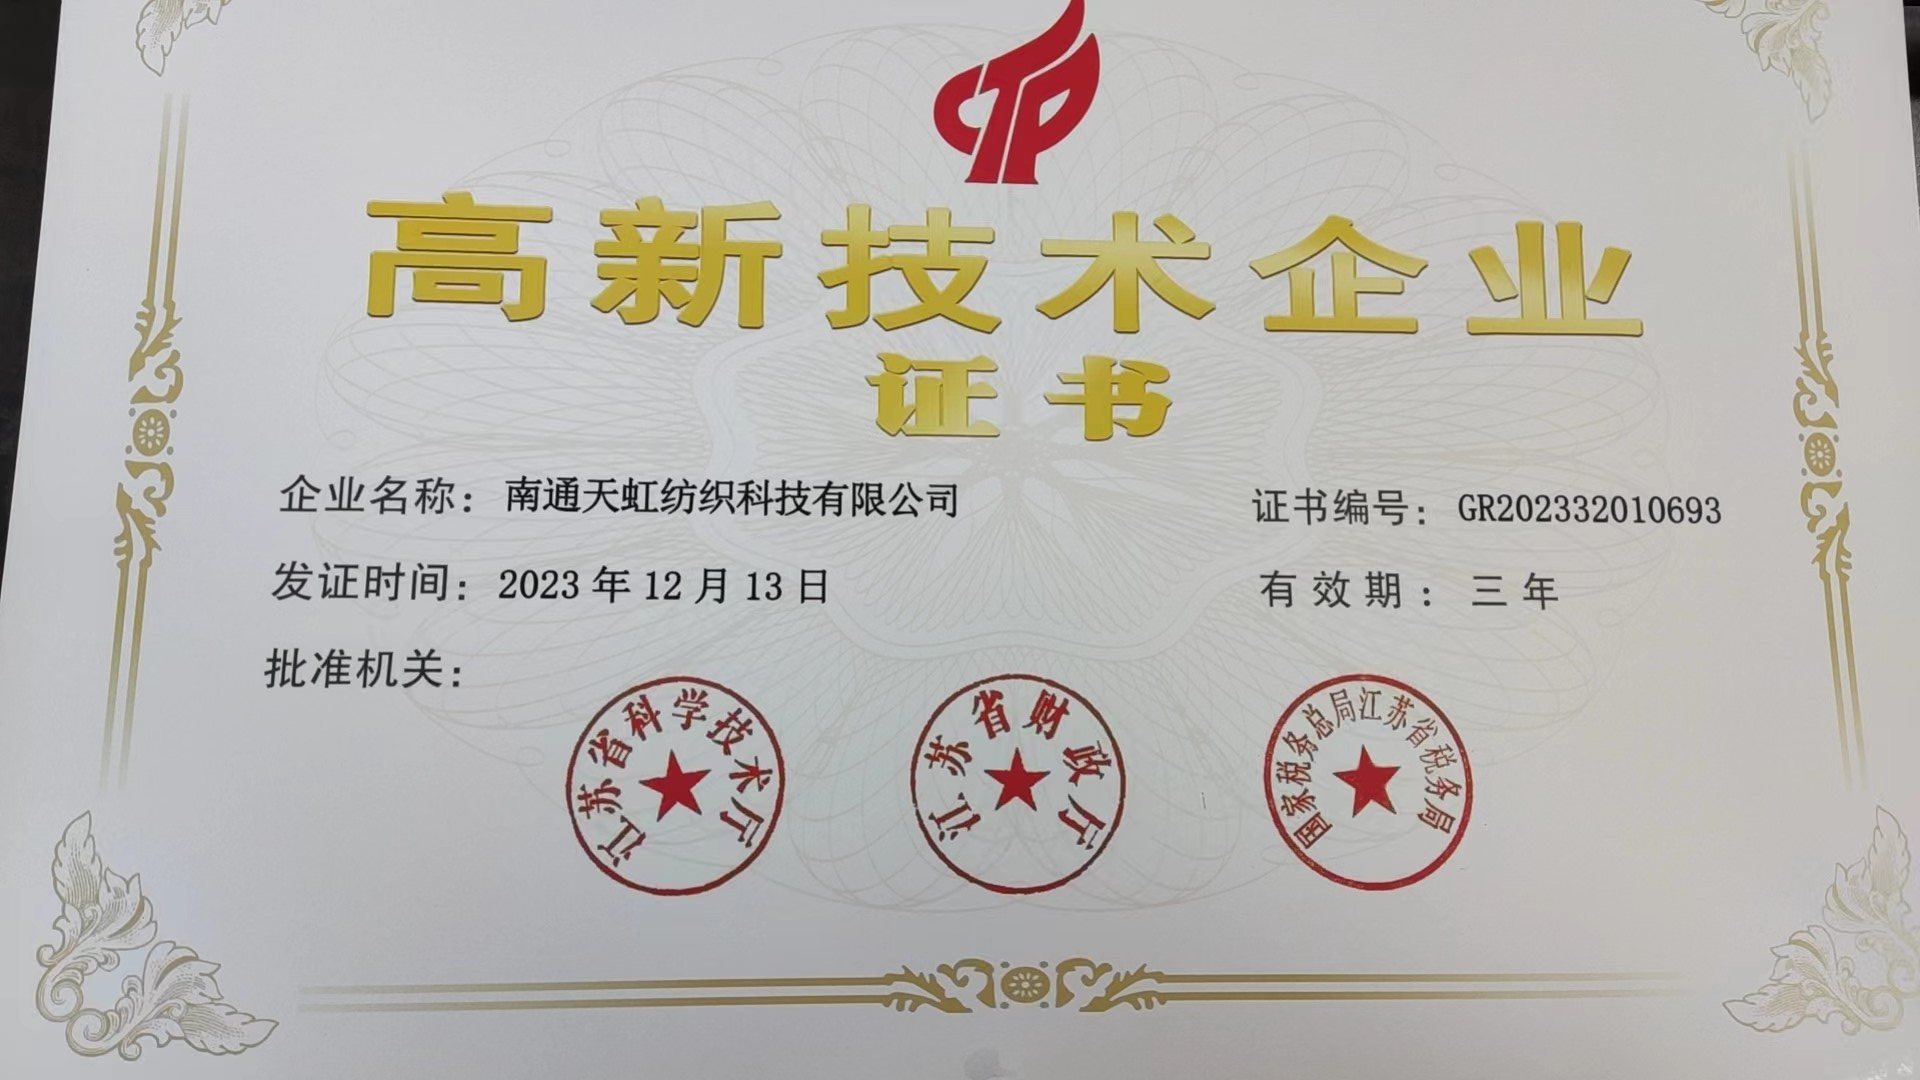 Được trao chứng nhận “Doanh nghiệp công nghệ cao” --- Đổi mới công nghệ của Tianhong được công nhận